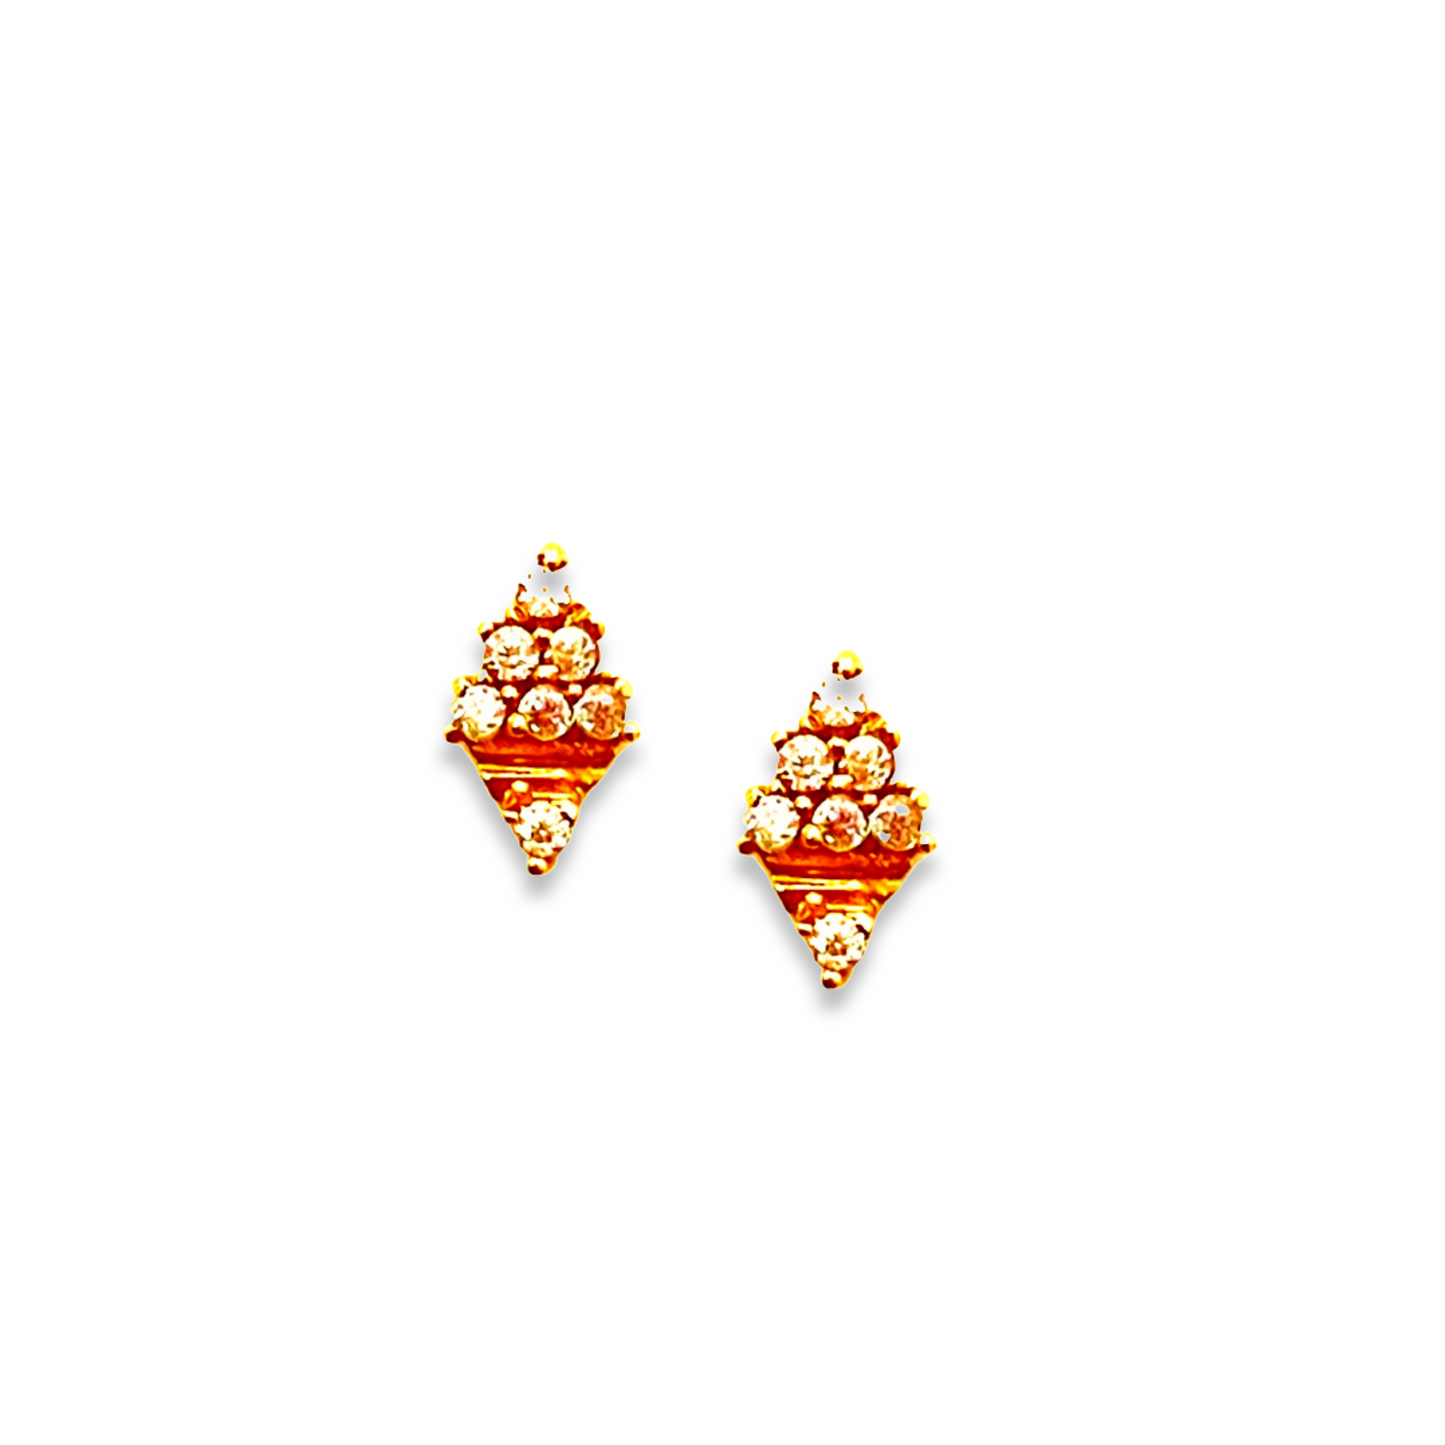 18KT Gold Stone Diamond Pattern Stud Earrings.